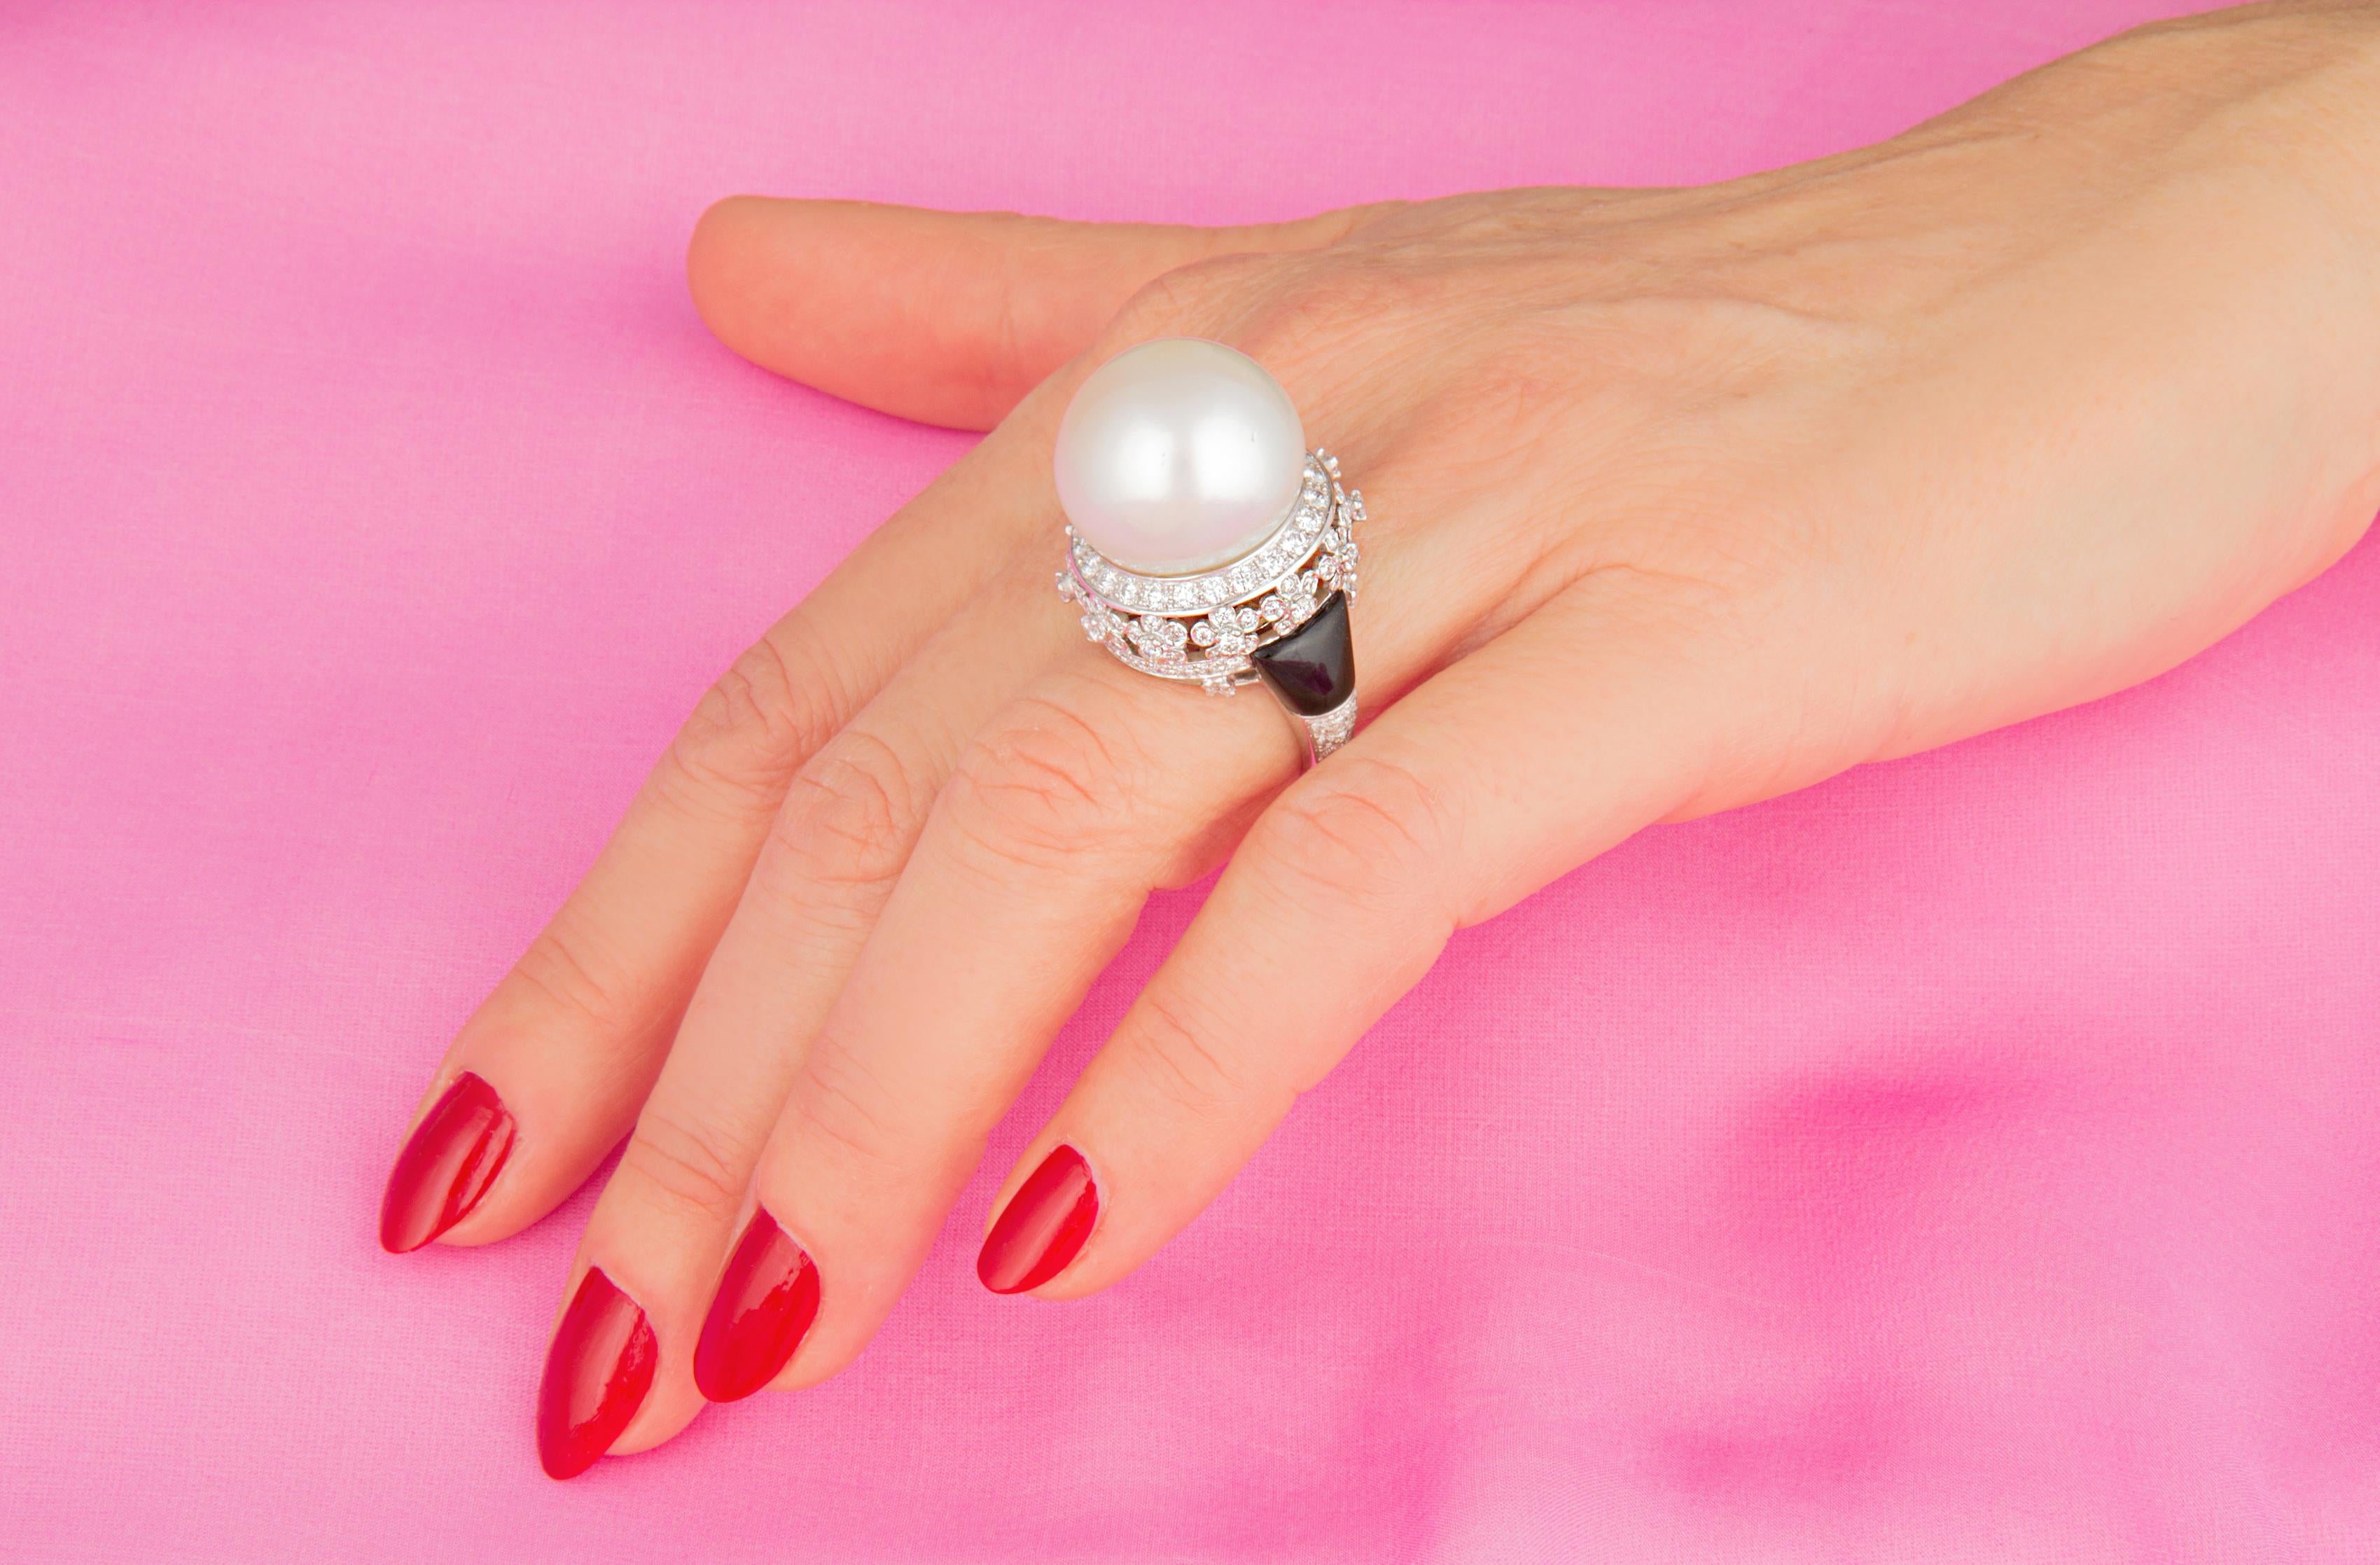 Dieser Perlen- und Diamantring zeichnet sich durch eine außergewöhnlich große und schöne Südseeperle von 19 mm Durchmesser aus. Die Perle ist naturbelassen. Er weist ein feines Perlmutt auf und seine natürliche Farbe und sein Glanz wurden in keiner